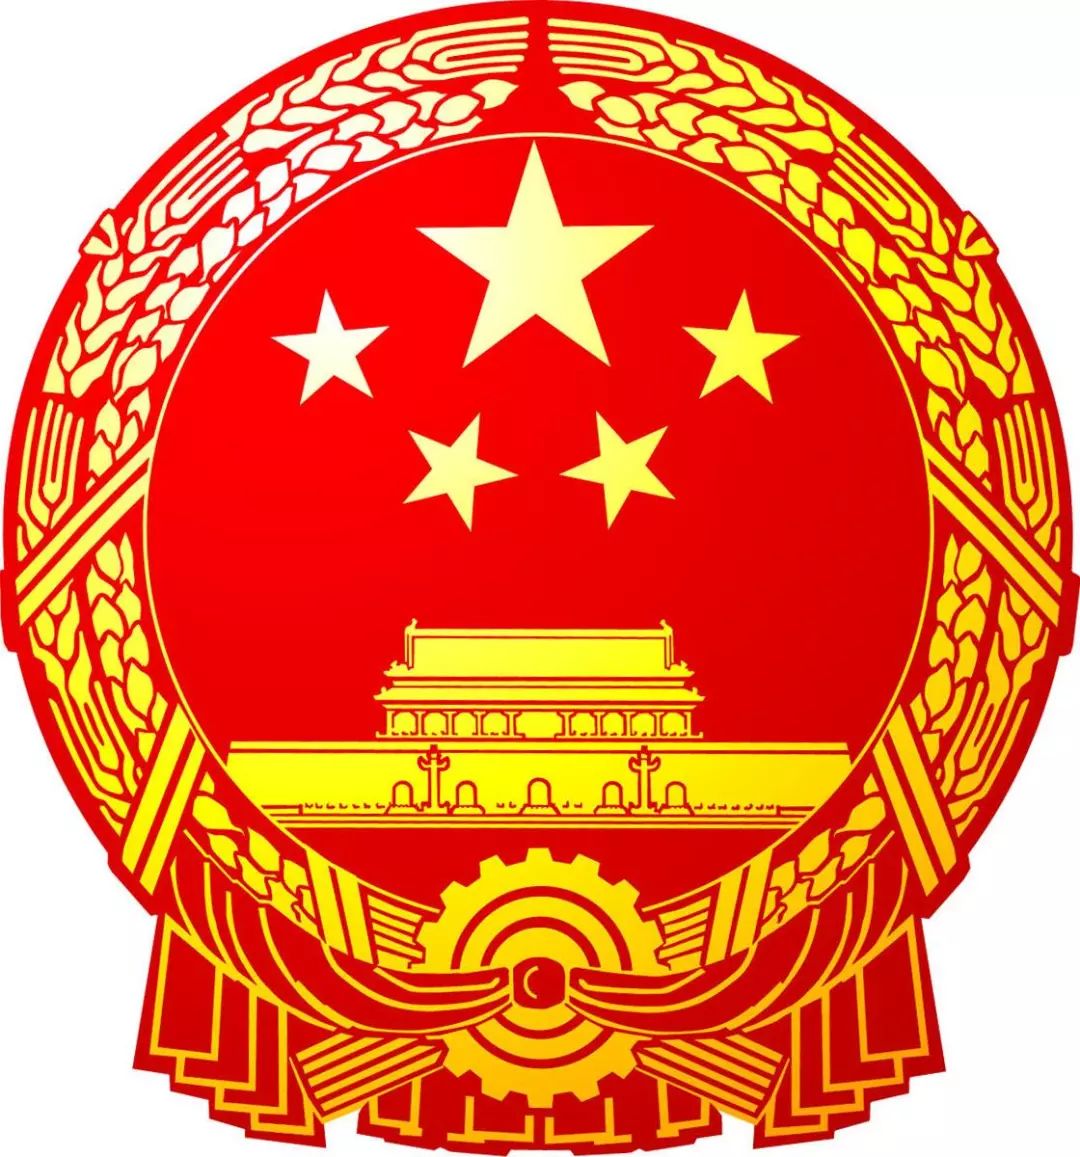 中国国徽屏保图片图片